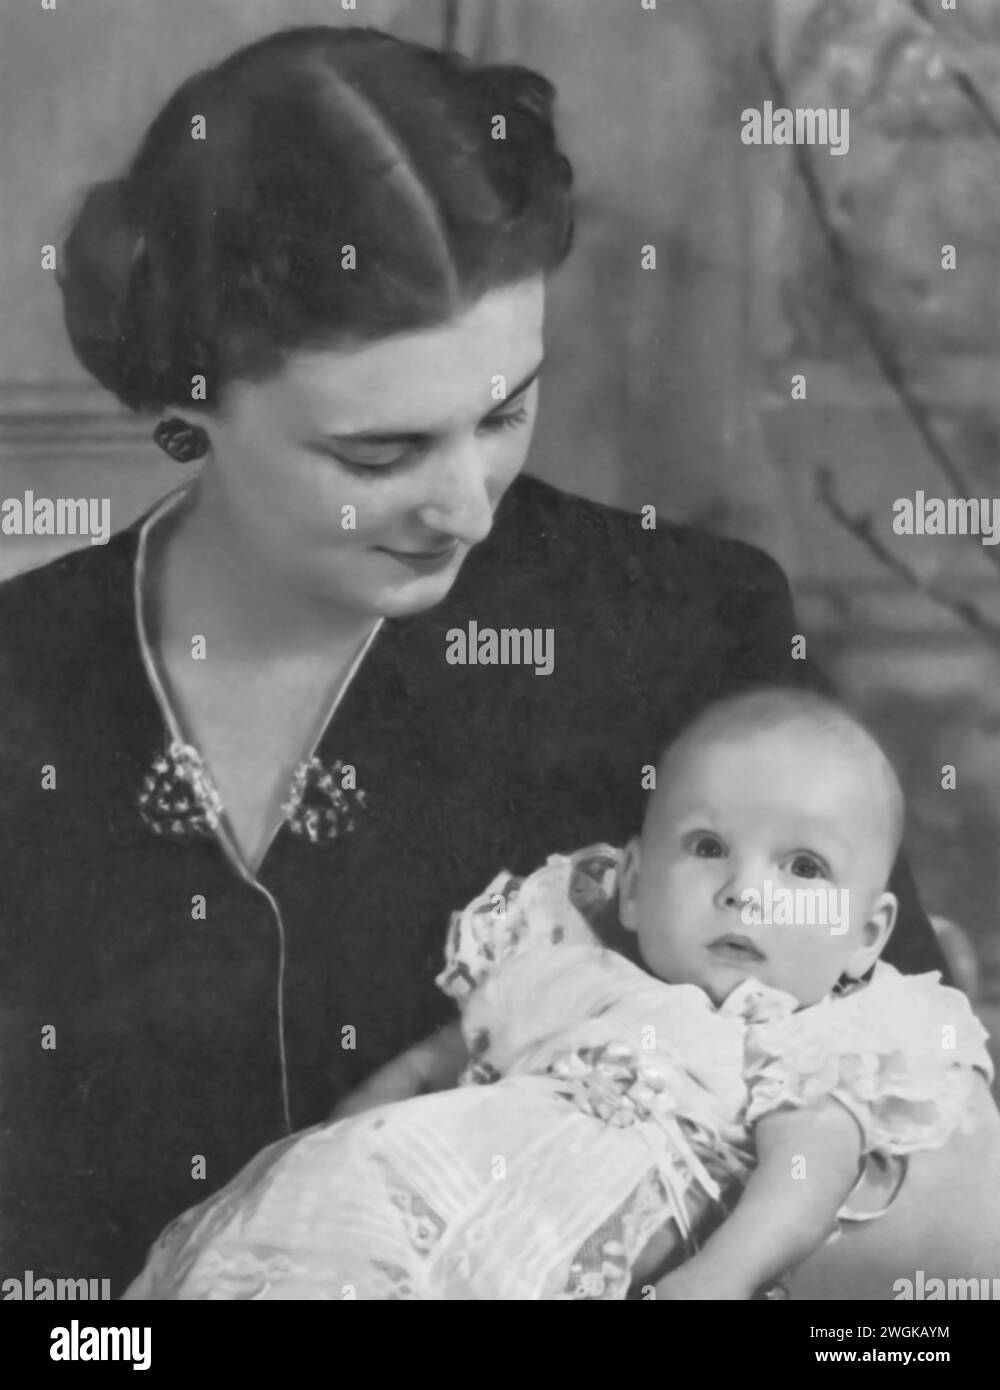 Ritratto della principessa Marina, duchessa di Kent, con sua figlia, principessa Alexandra, rincess Marina, originariamente una reale greca e danese prima del suo matrimonio, è mostrata con Alessandra, nata il 25 dicembre 1936. Foto Stock